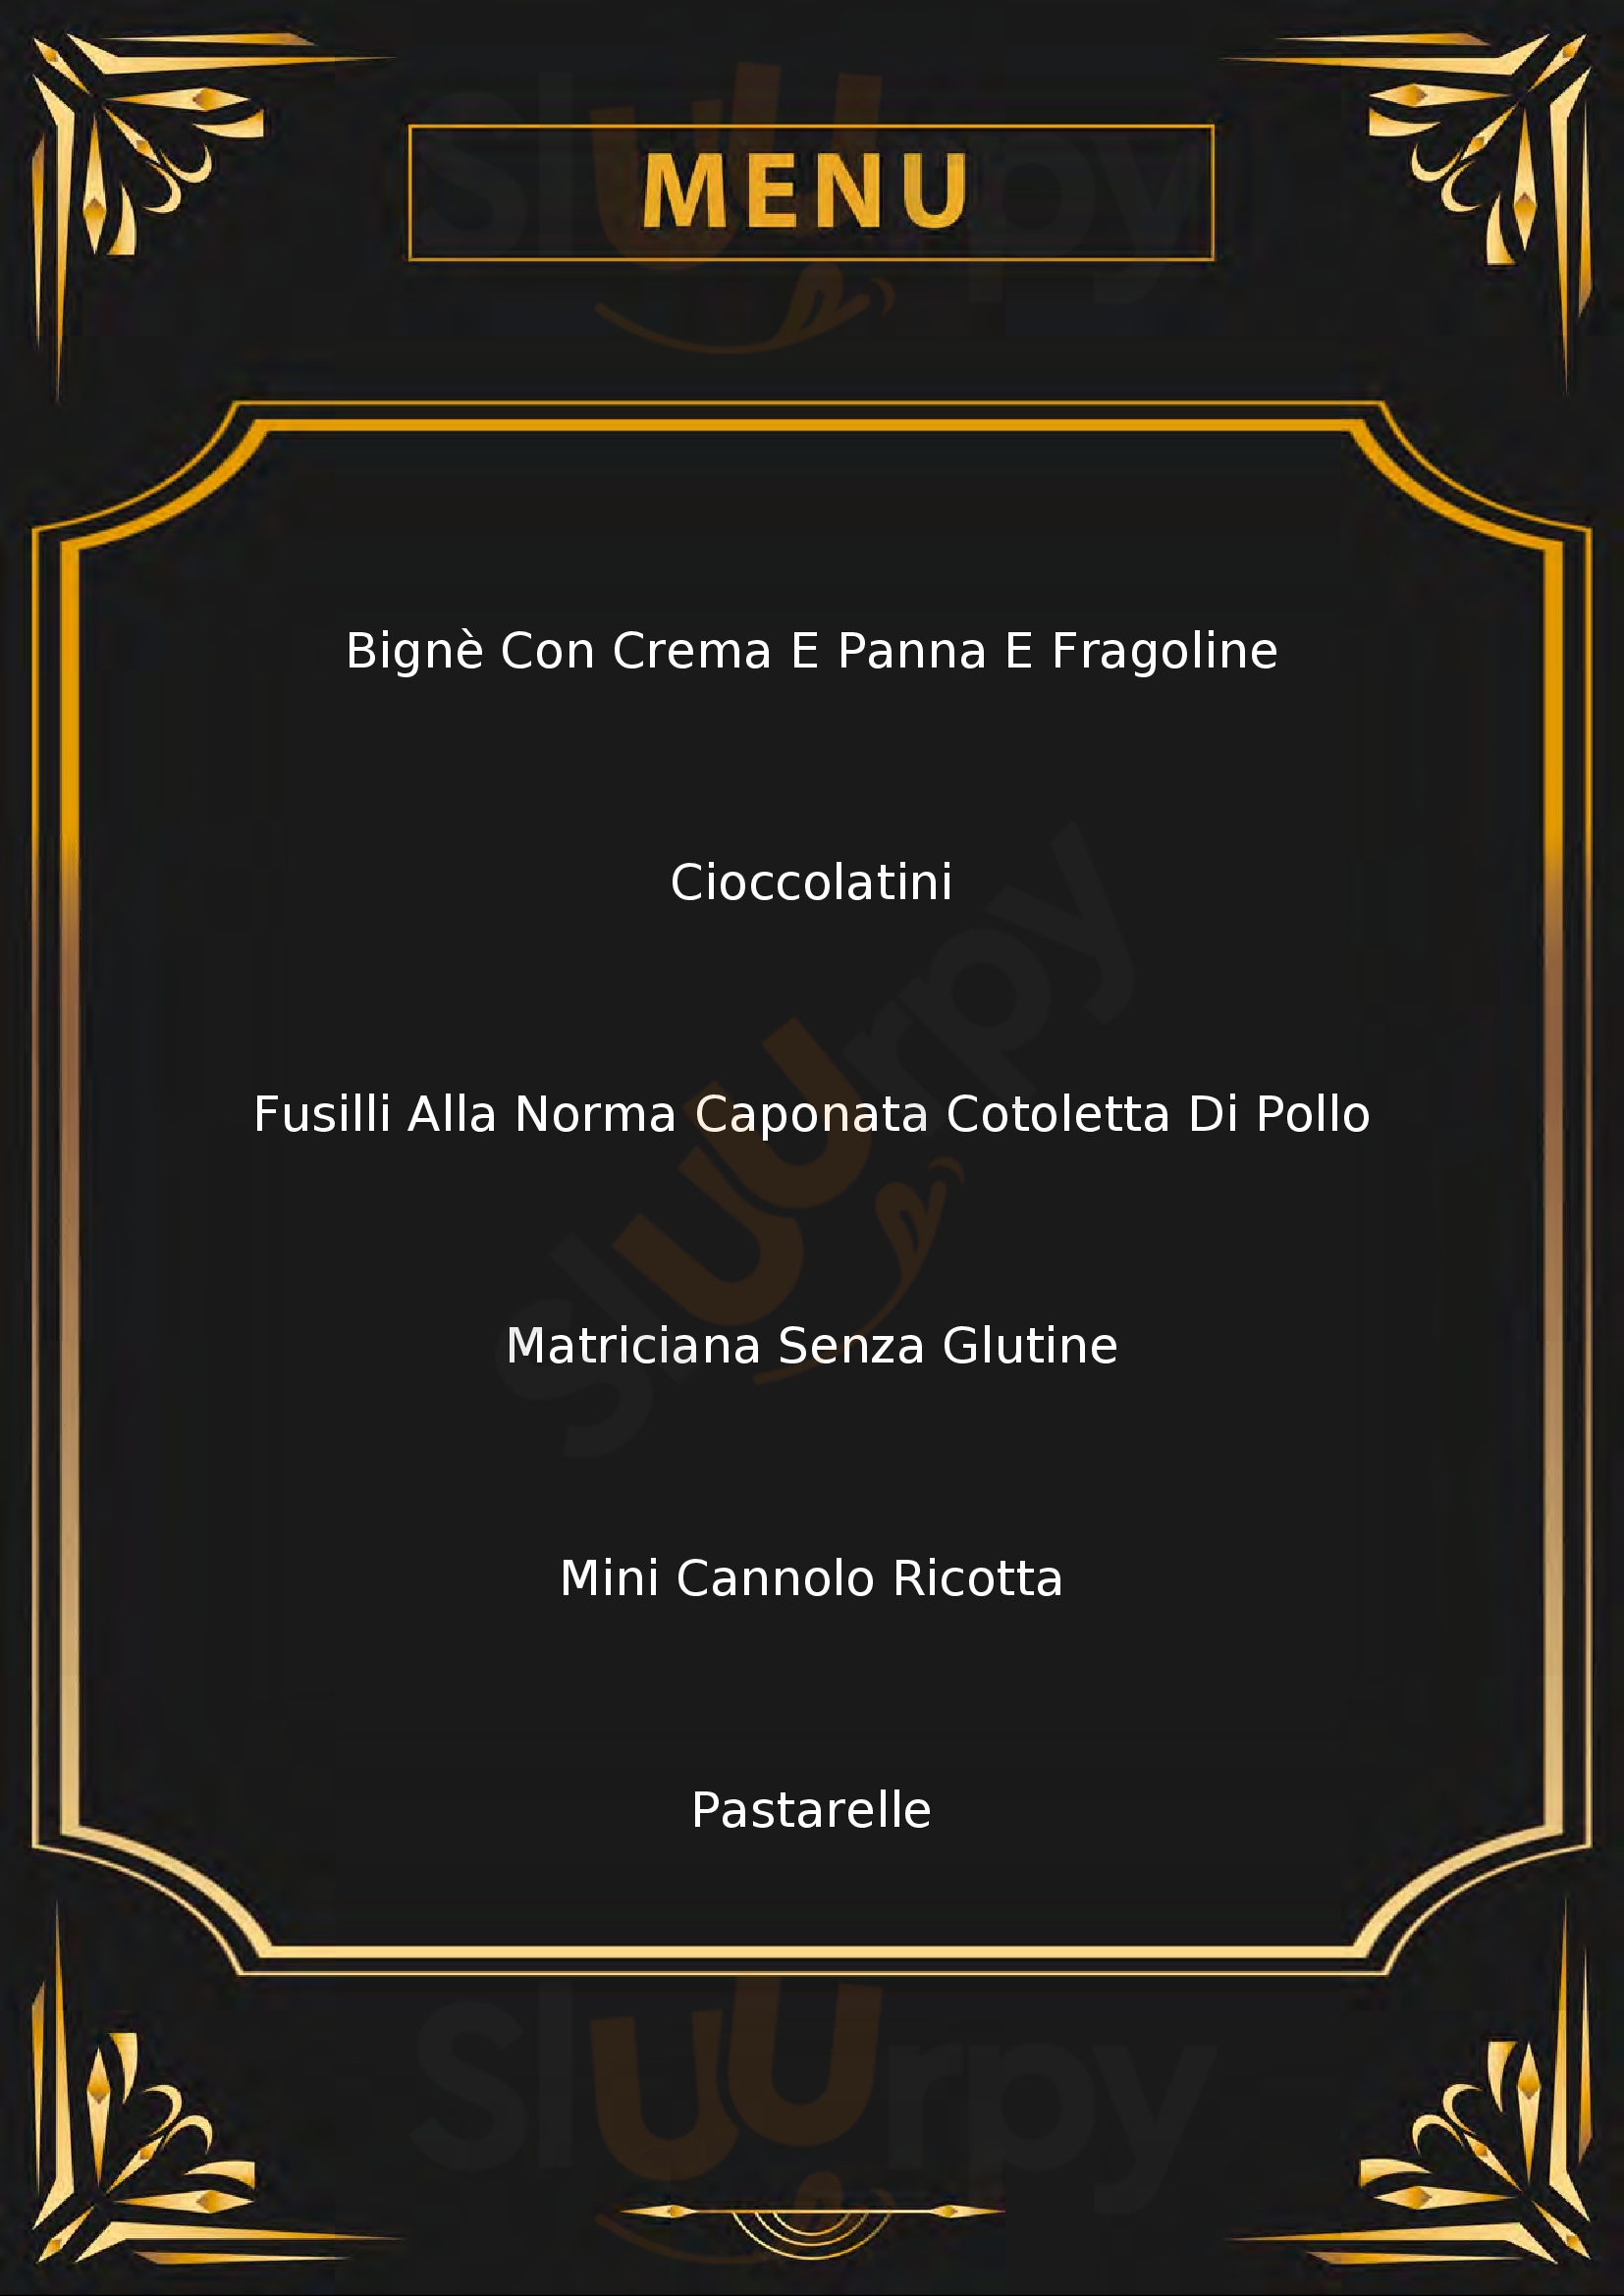 Sicilia Caffè Tiburtina Roma menù 1 pagina